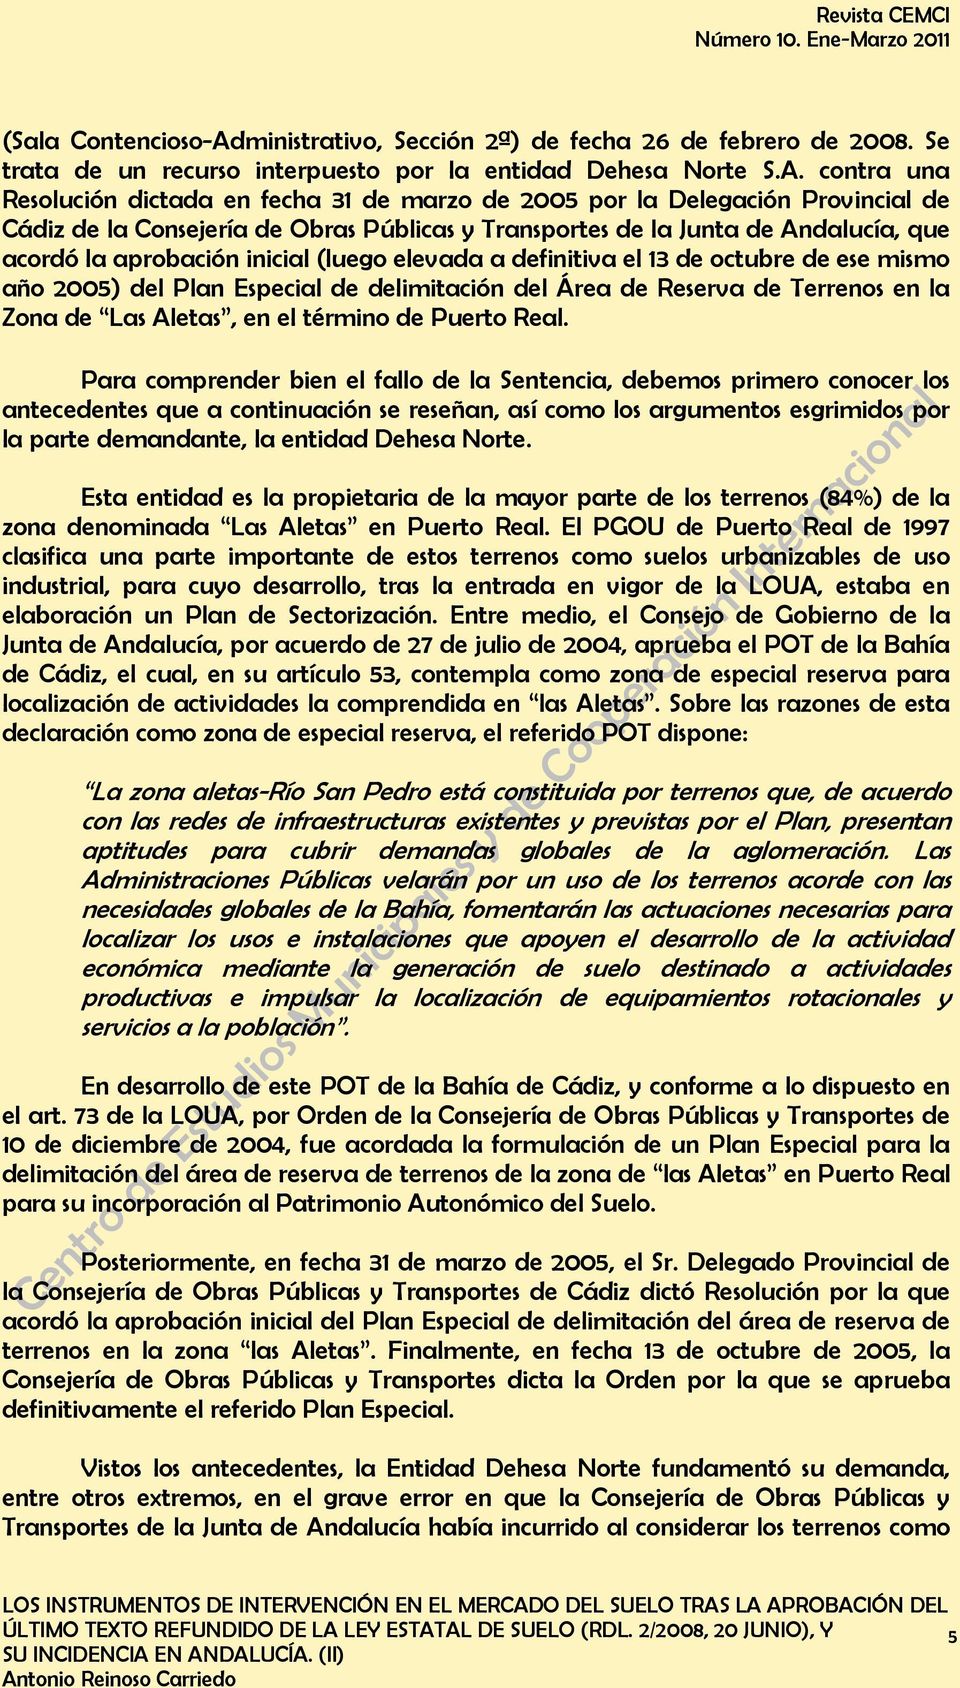 contra una Resolución dictada en fecha 31 de marzo de 2005 por la Delegación Provincial de Cádiz de la Consejería de Obras Públicas y Transportes de la Junta de Andalucía, que acordó la aprobación